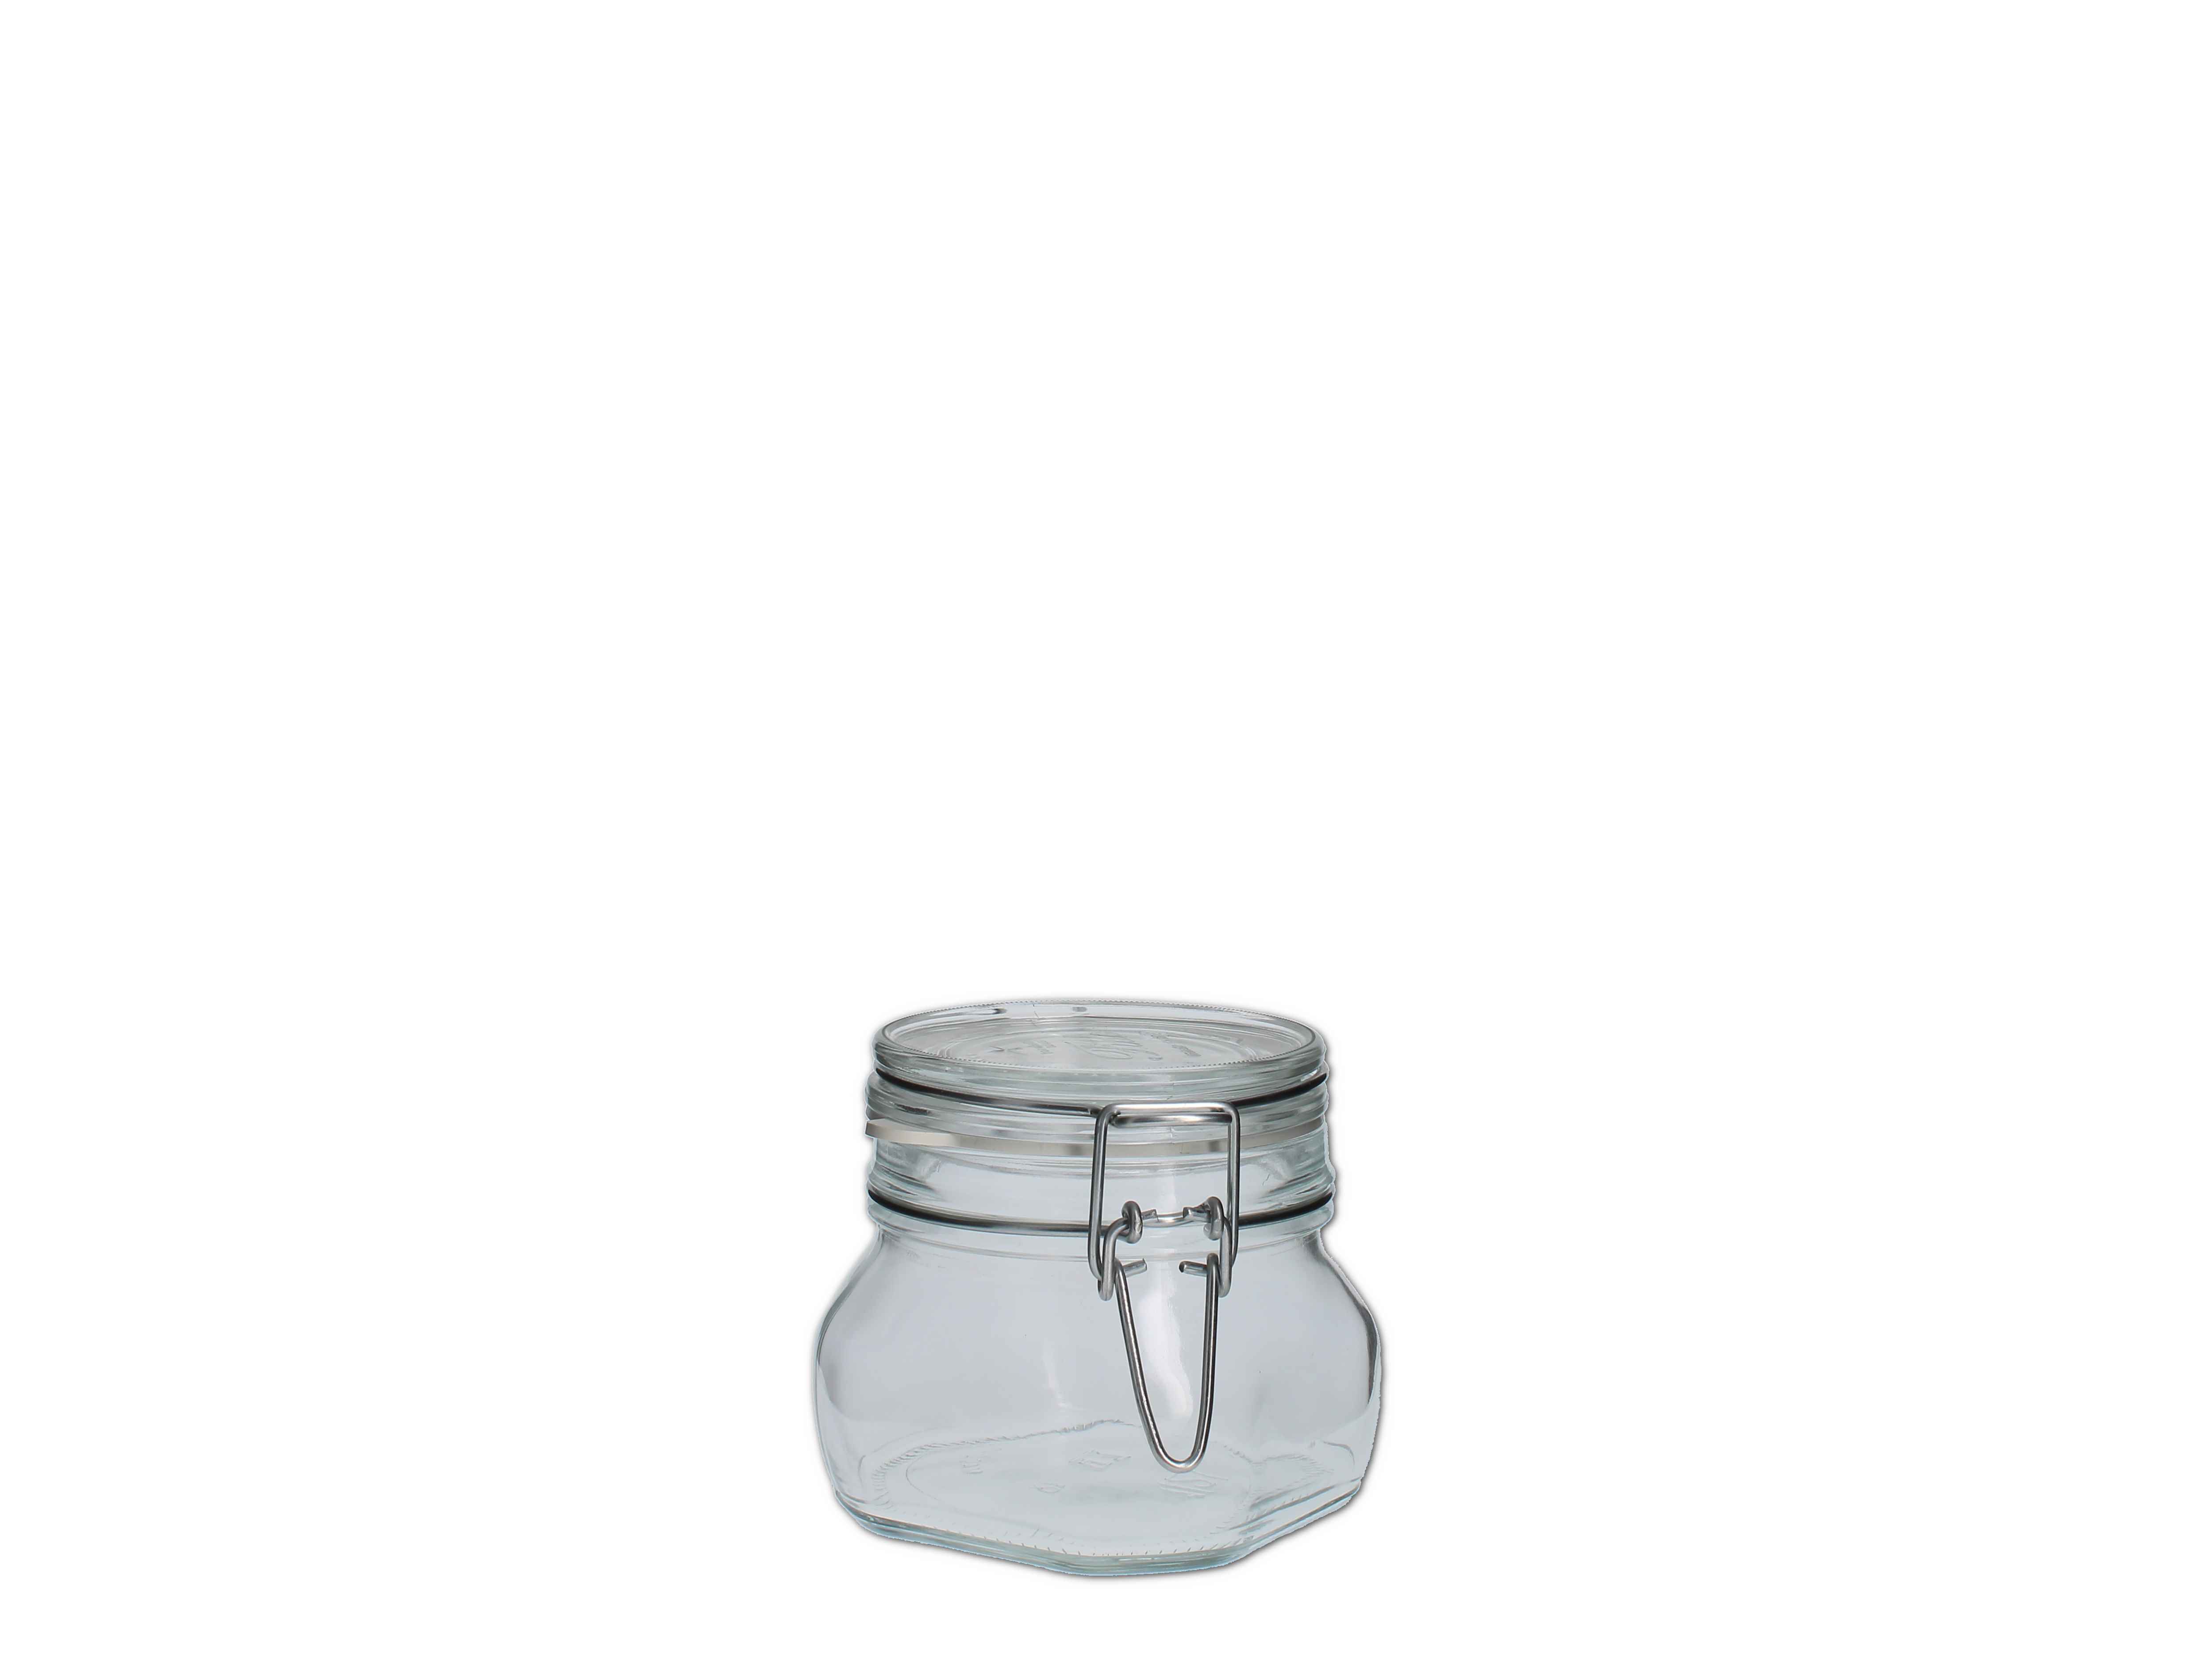    Vorratsglas Fido mit Bügelver. 500ml - Abverkaufspreis